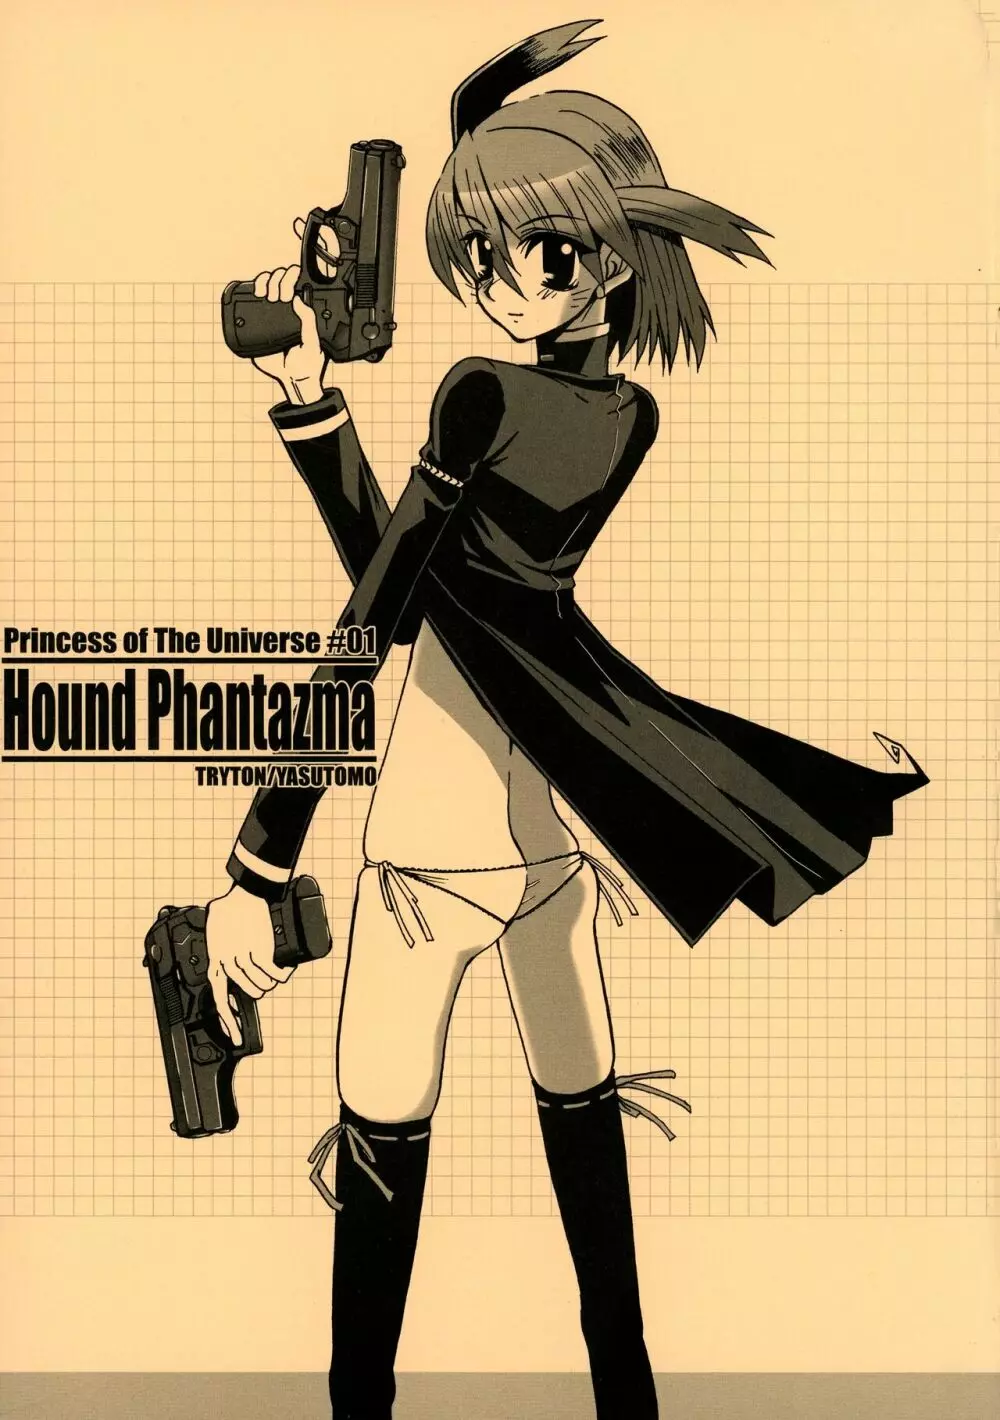 Hound Phantazma -Princess of The Universe #01-